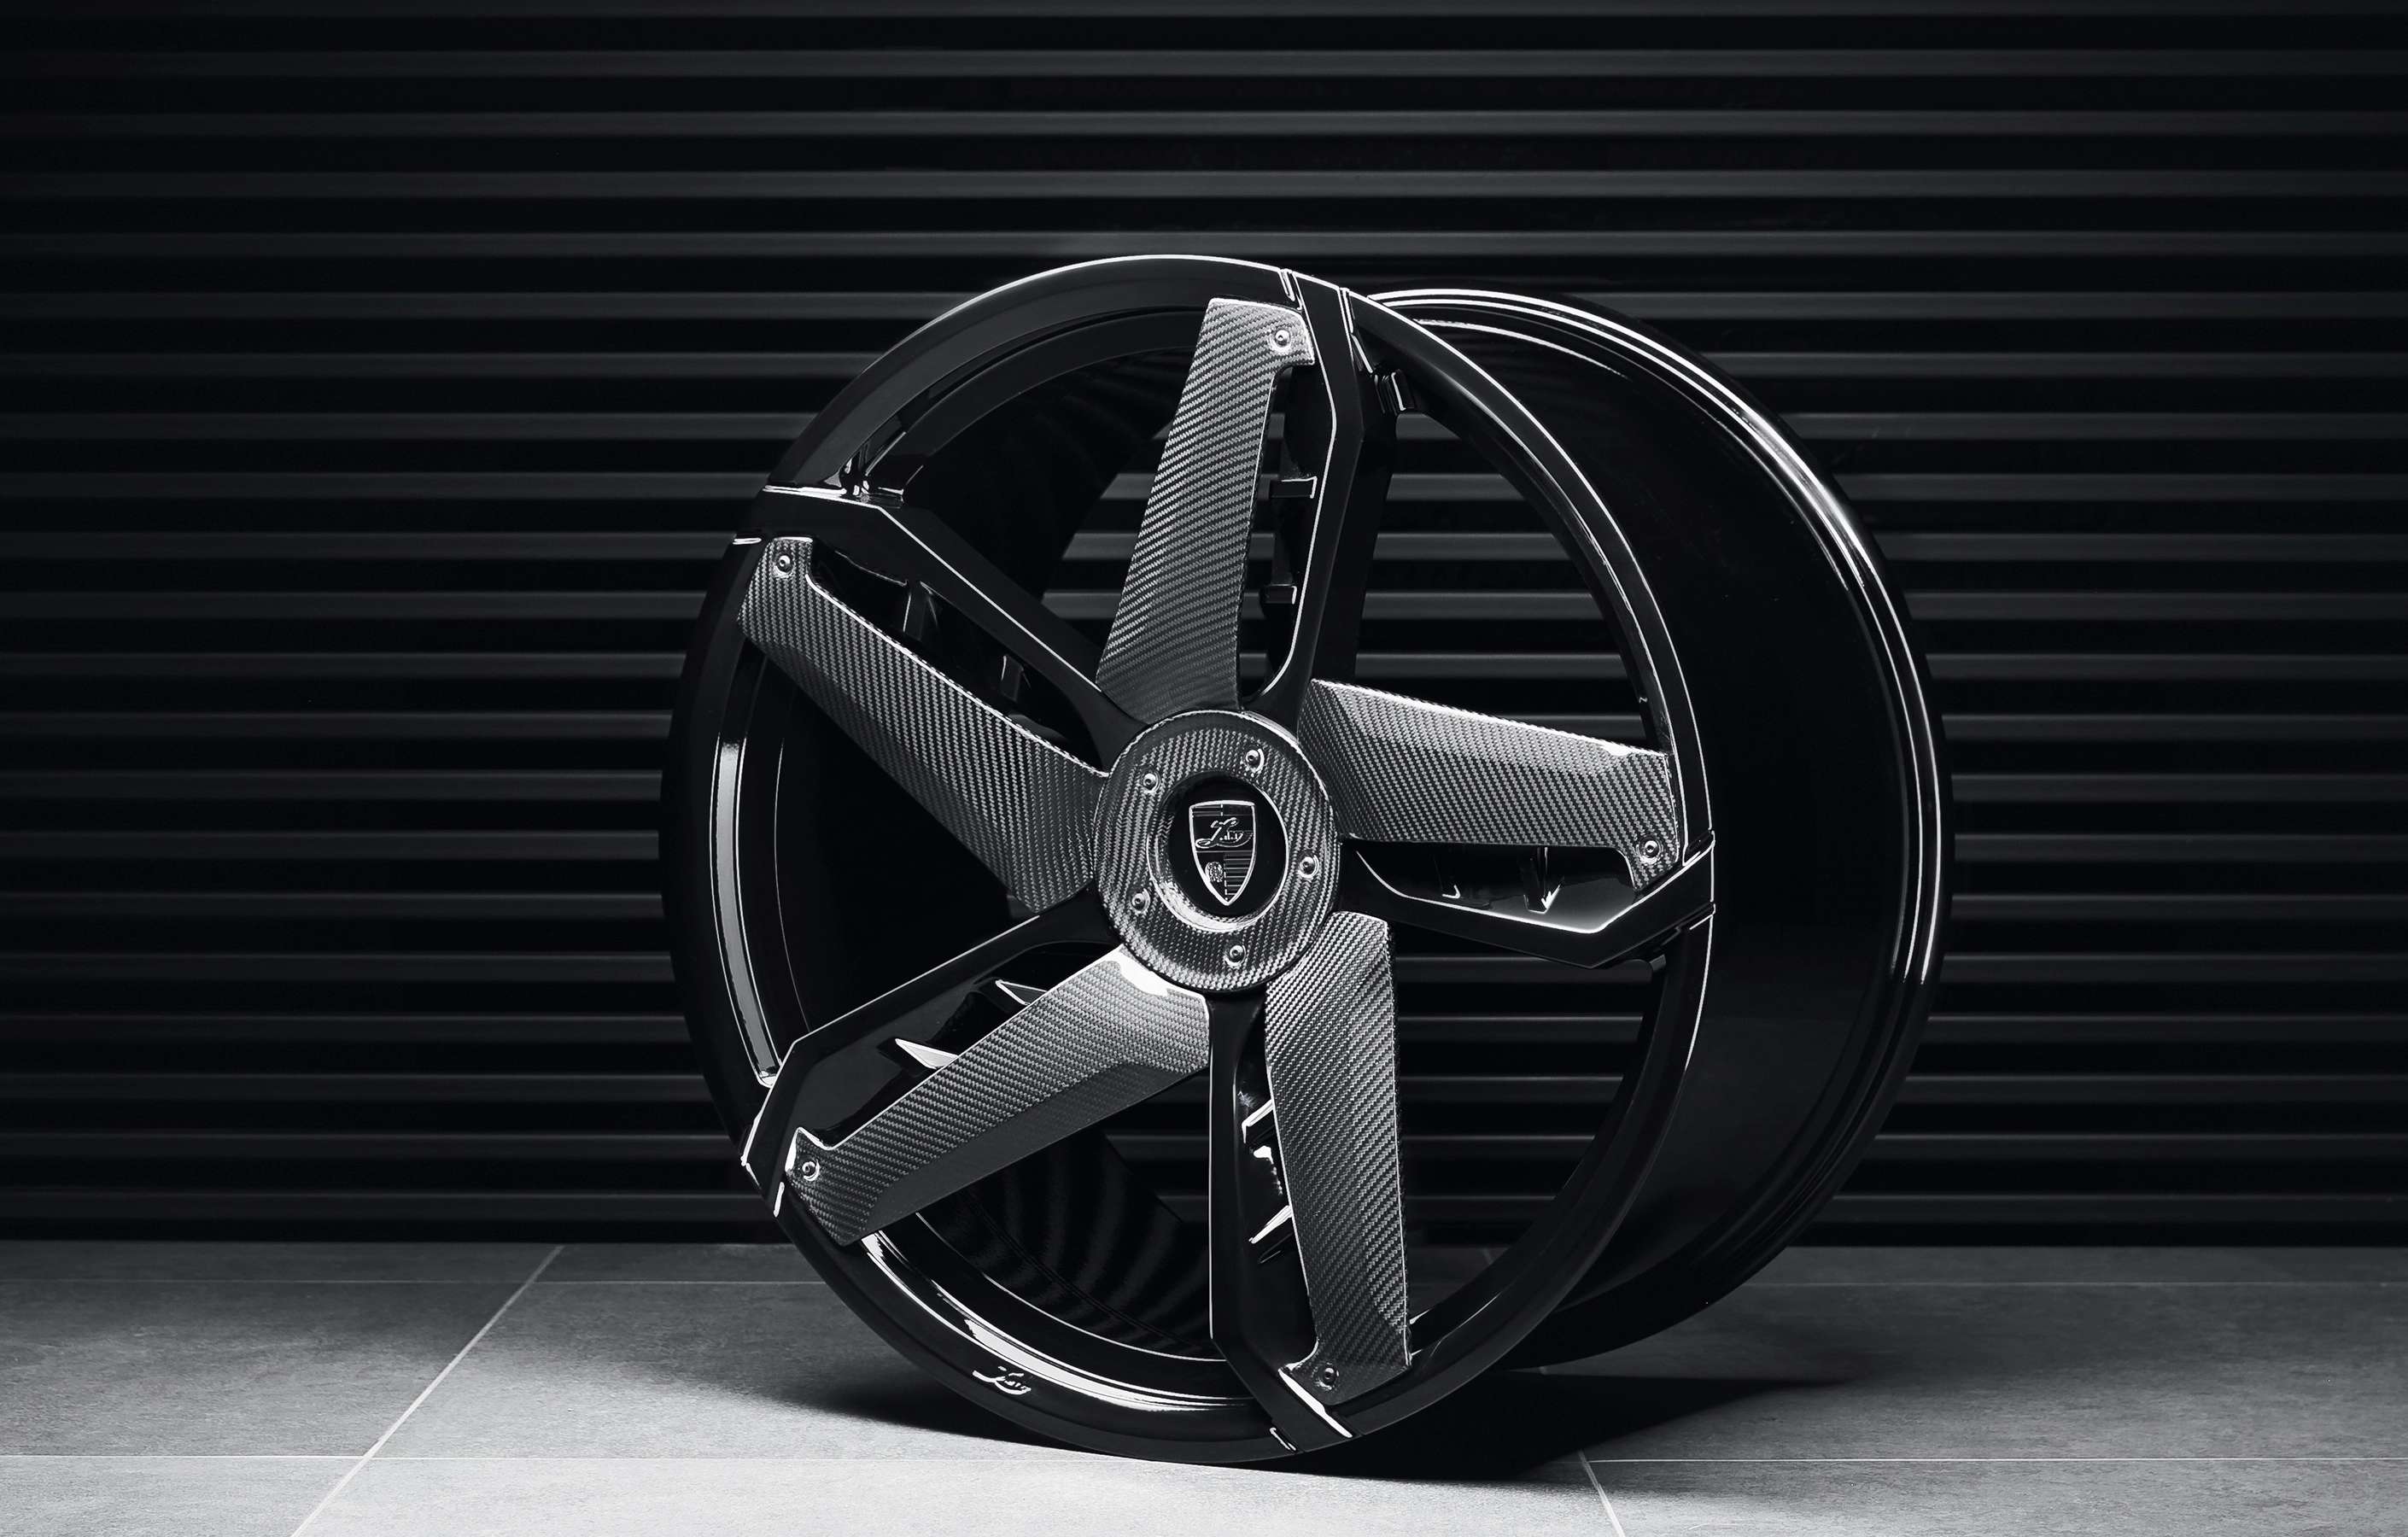 Кованые диски Larte дизайна диаметром 21 дюйм для BMW X3 G01 2020